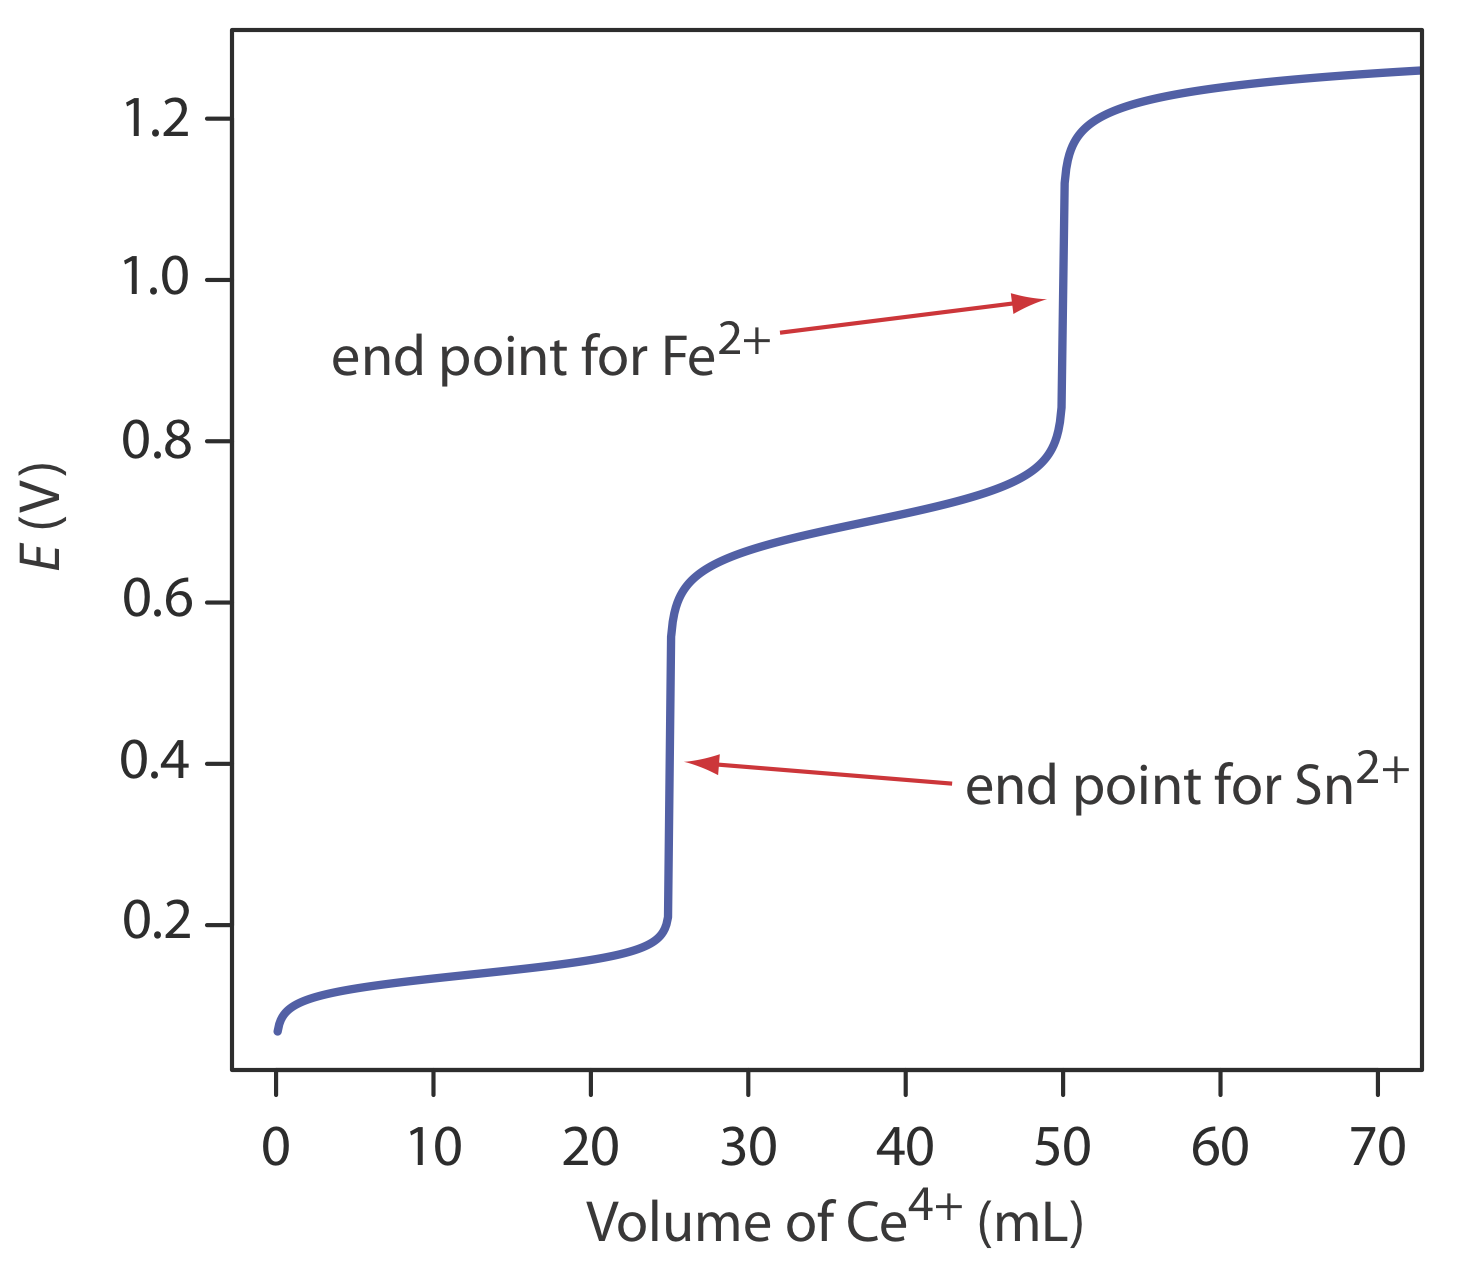 El punto final de la valoración de Sn2+ está en 0.4 E (V) y el punto final para Fe2+ está justo por debajo de 1.0 E (V).